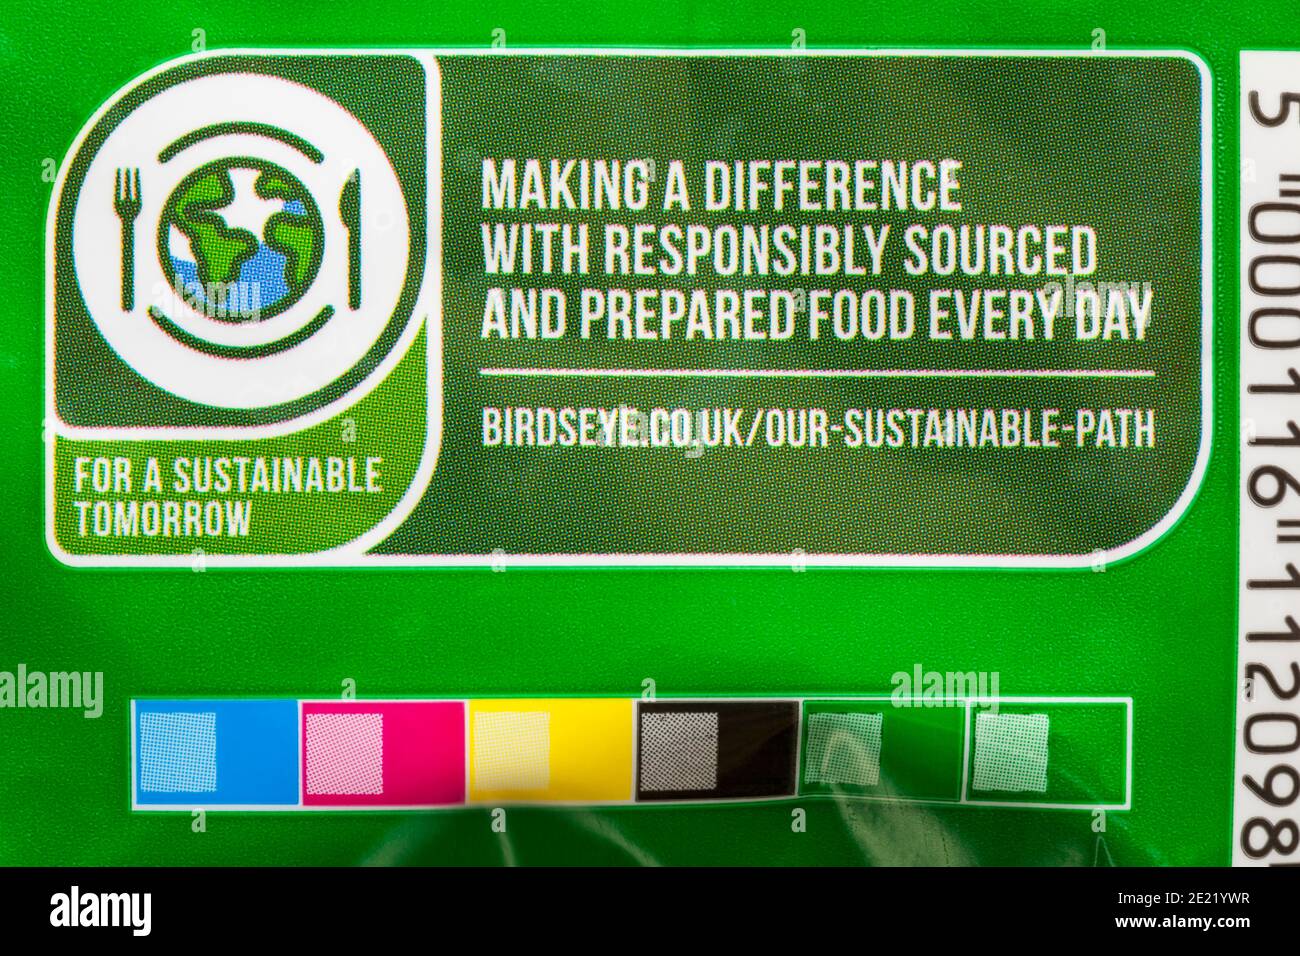 Per un domani sostenibile, fare la differenza con cibo responsabilmente fornito e preparato ogni giorno - dettaglio su confezione di piselli Frozen Birds Eye Garden Foto Stock